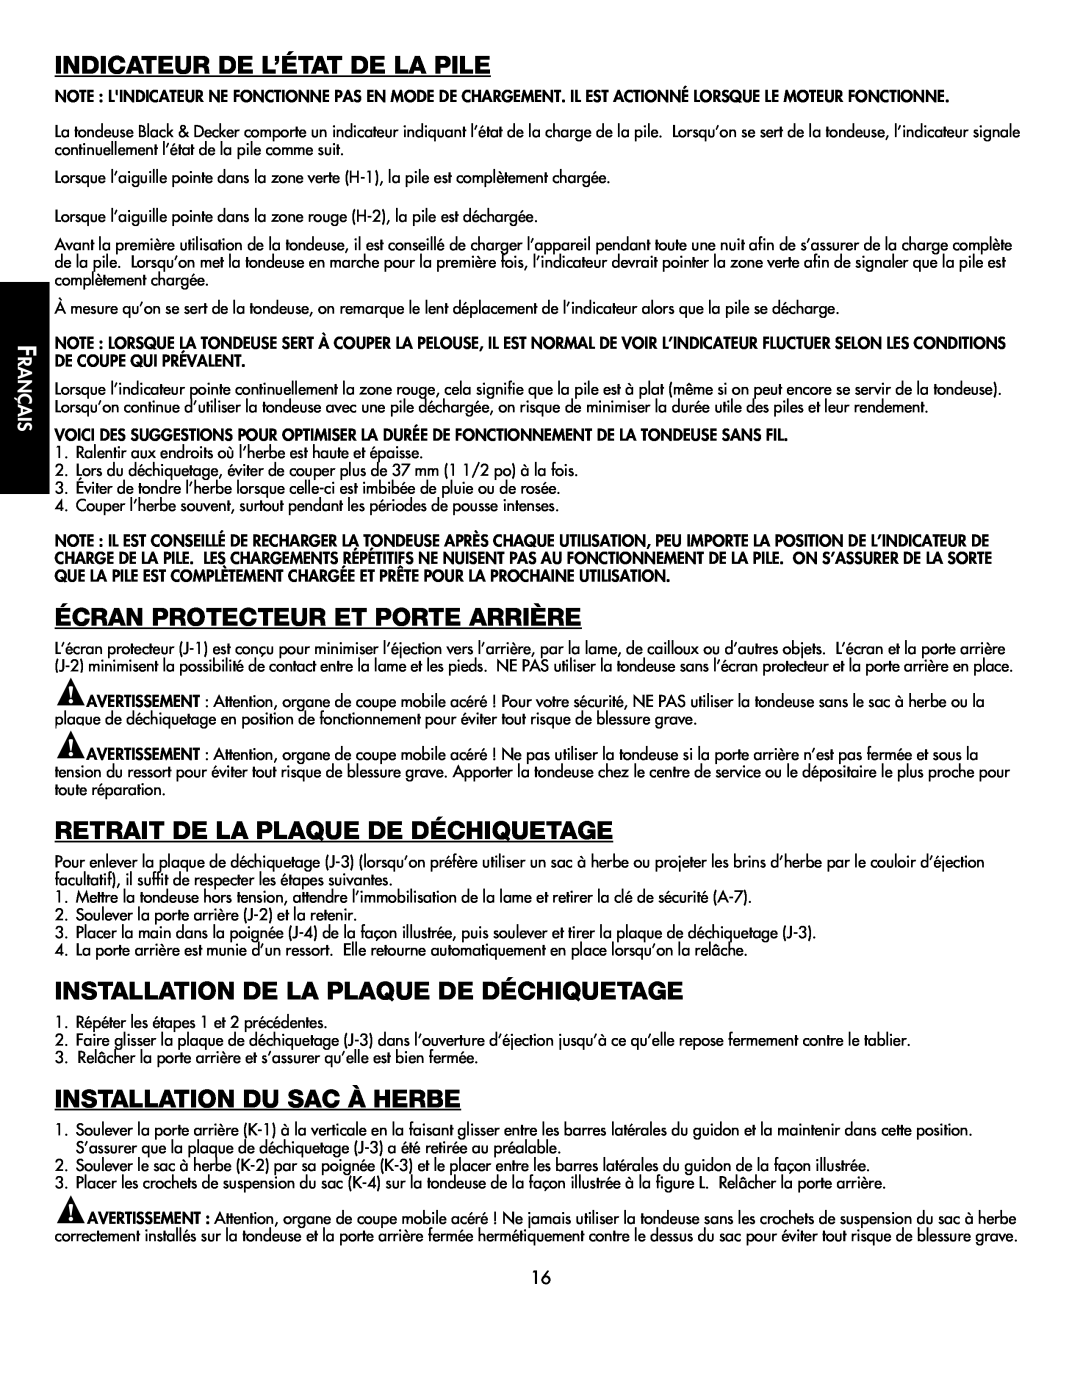 Black & Decker CMM1000 Indicateur De L’État De La Pile, Écran Protecteur Et Porte Arrière, Installation Du Sac À Herbe 